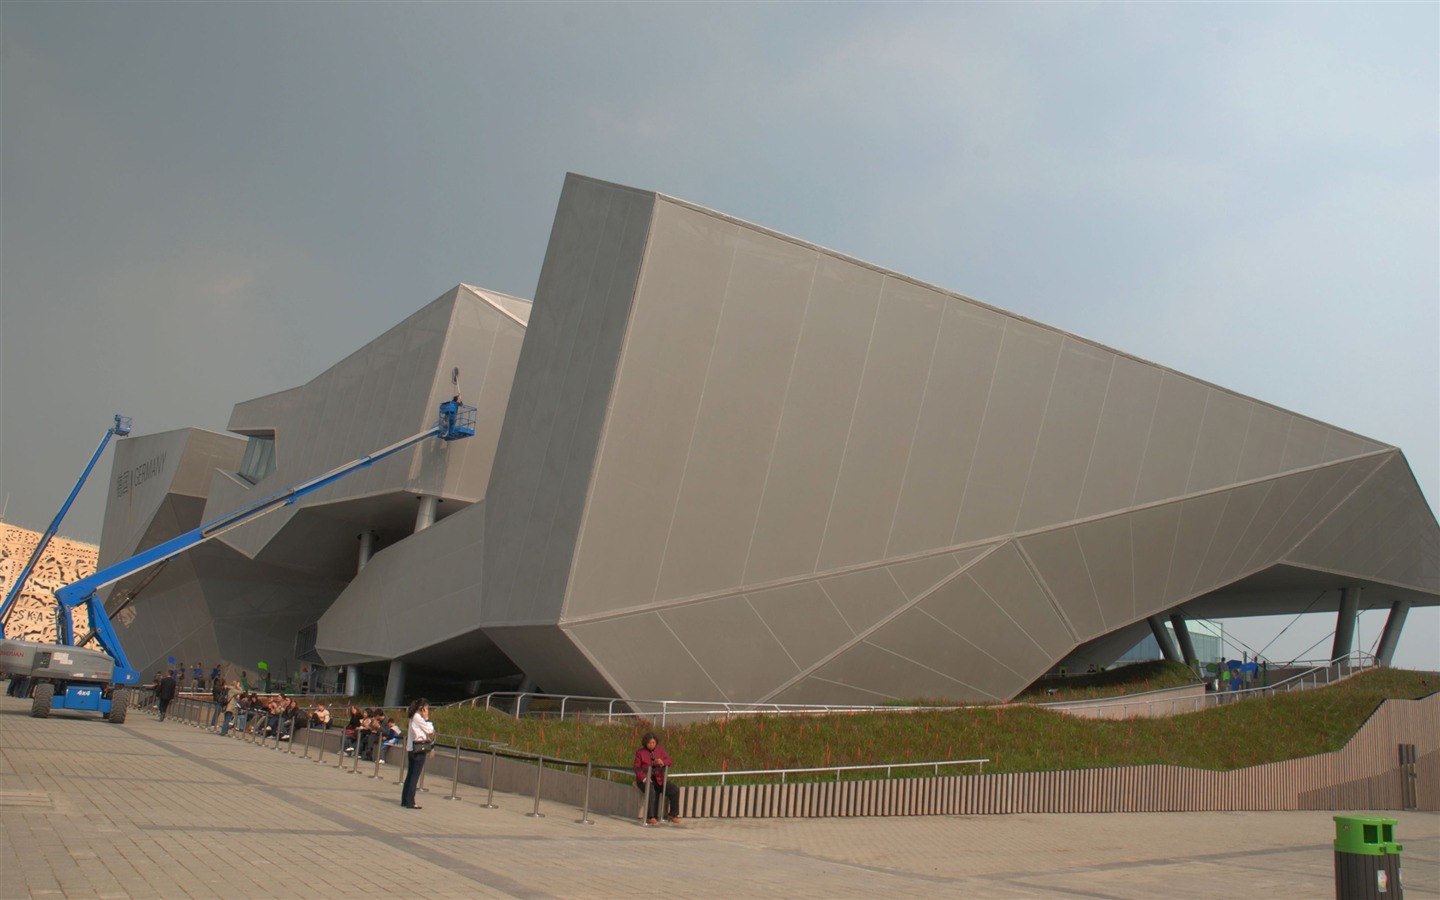 Uvedení v roce 2010 Šanghaj světové Expo (pilný práce) #21 - 1440x900